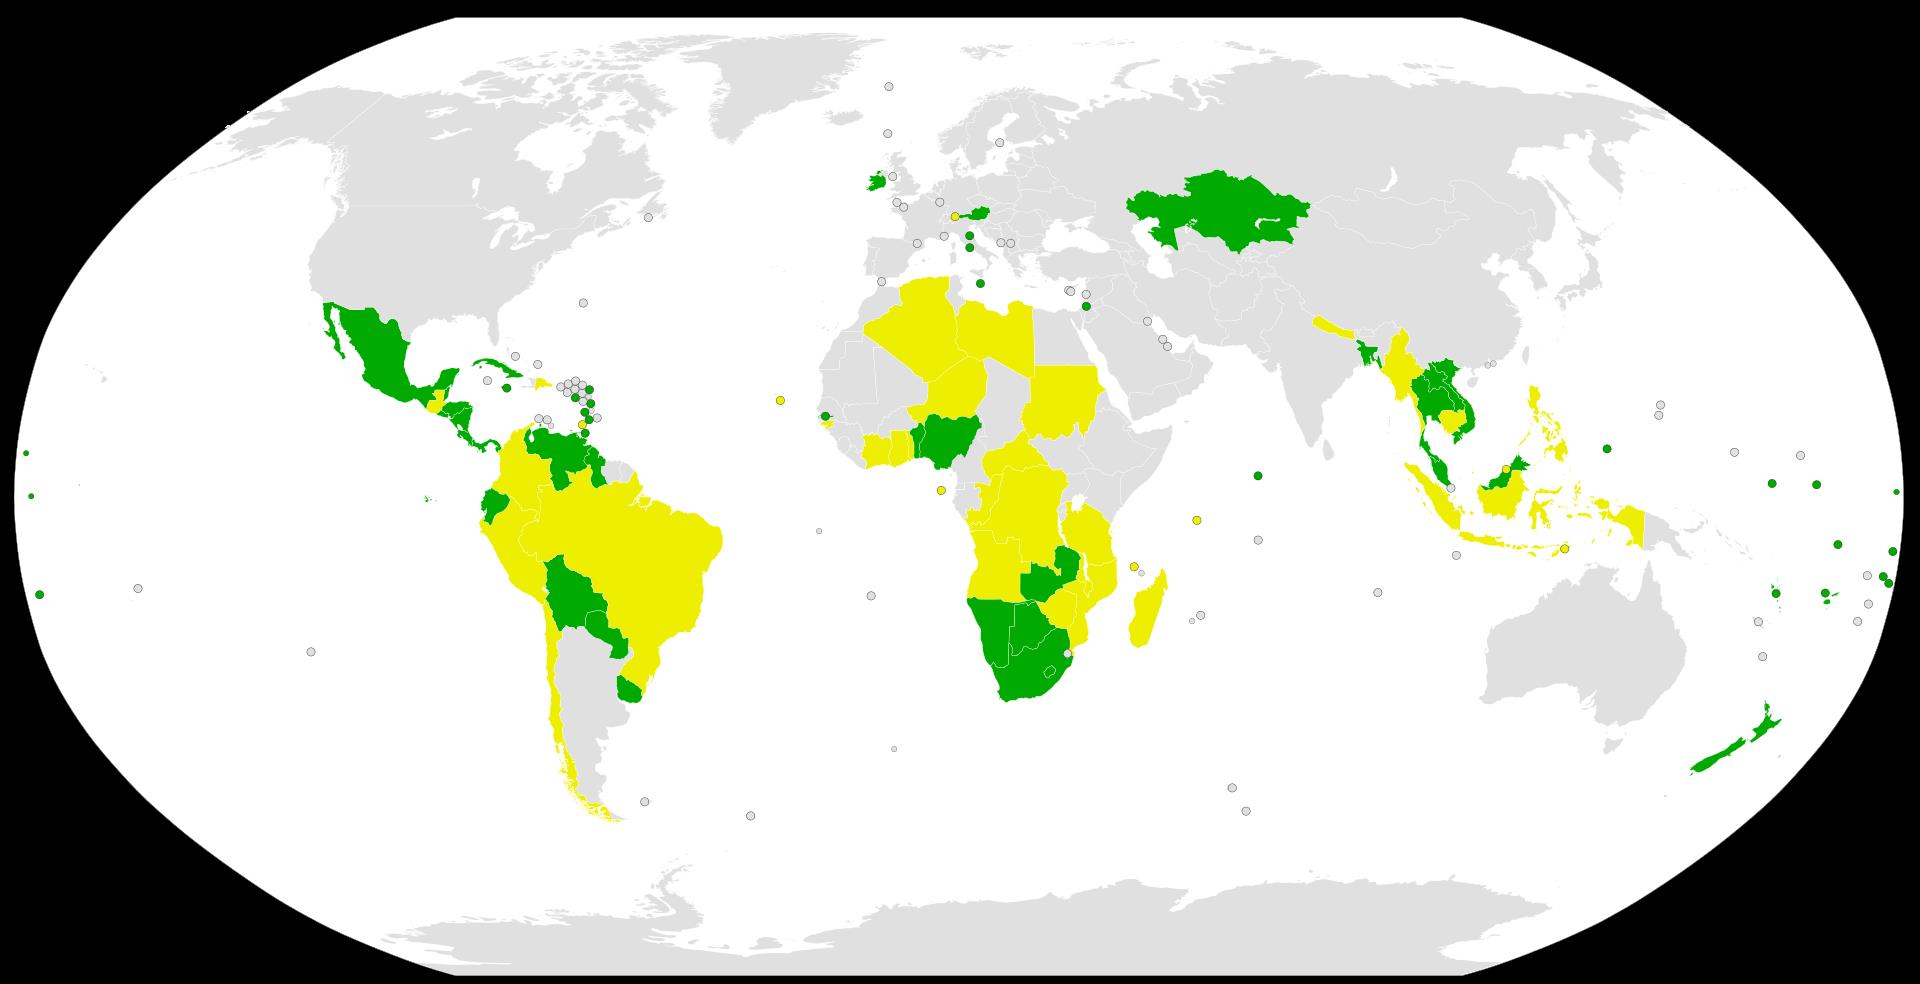 Карта государств-участников нового Договора о запрещении ядерного оружия. Цветом выделены государства-участники (желтым цветом выделены государства, подписавшие Договор, зелёным – государства, ратифицировавшие его)